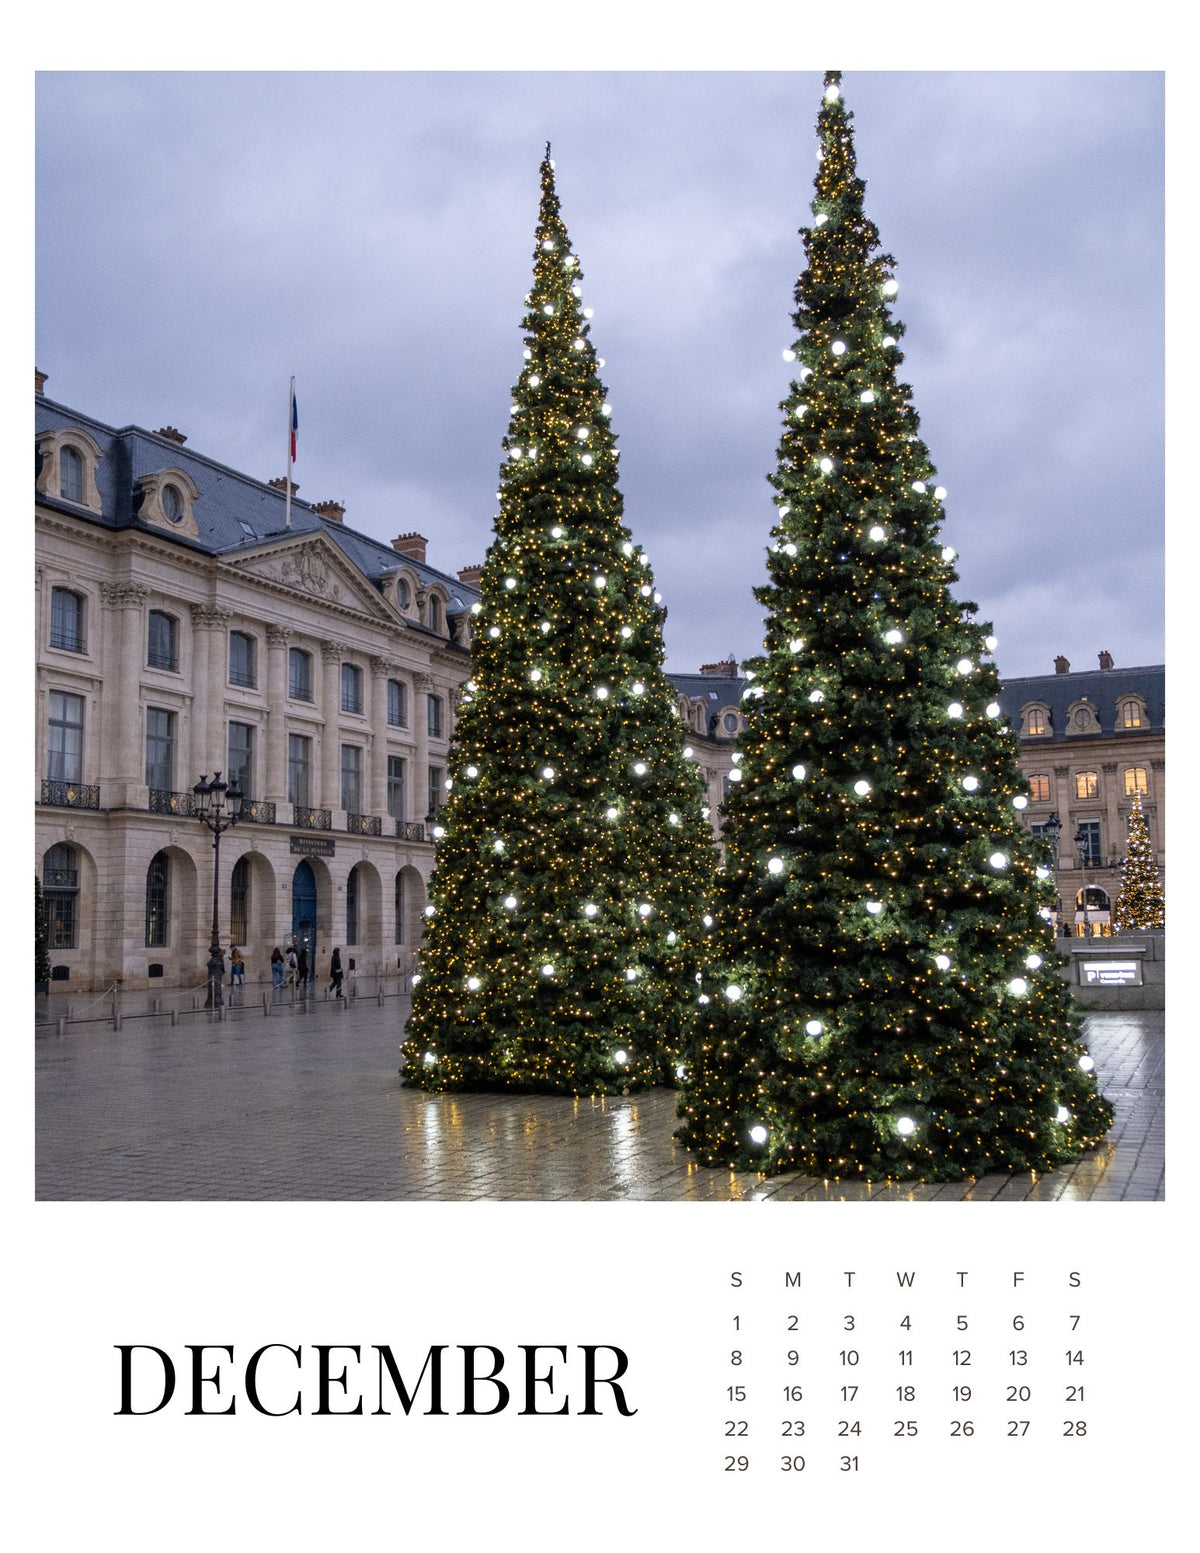 A Year in Paris 2024 Calendar